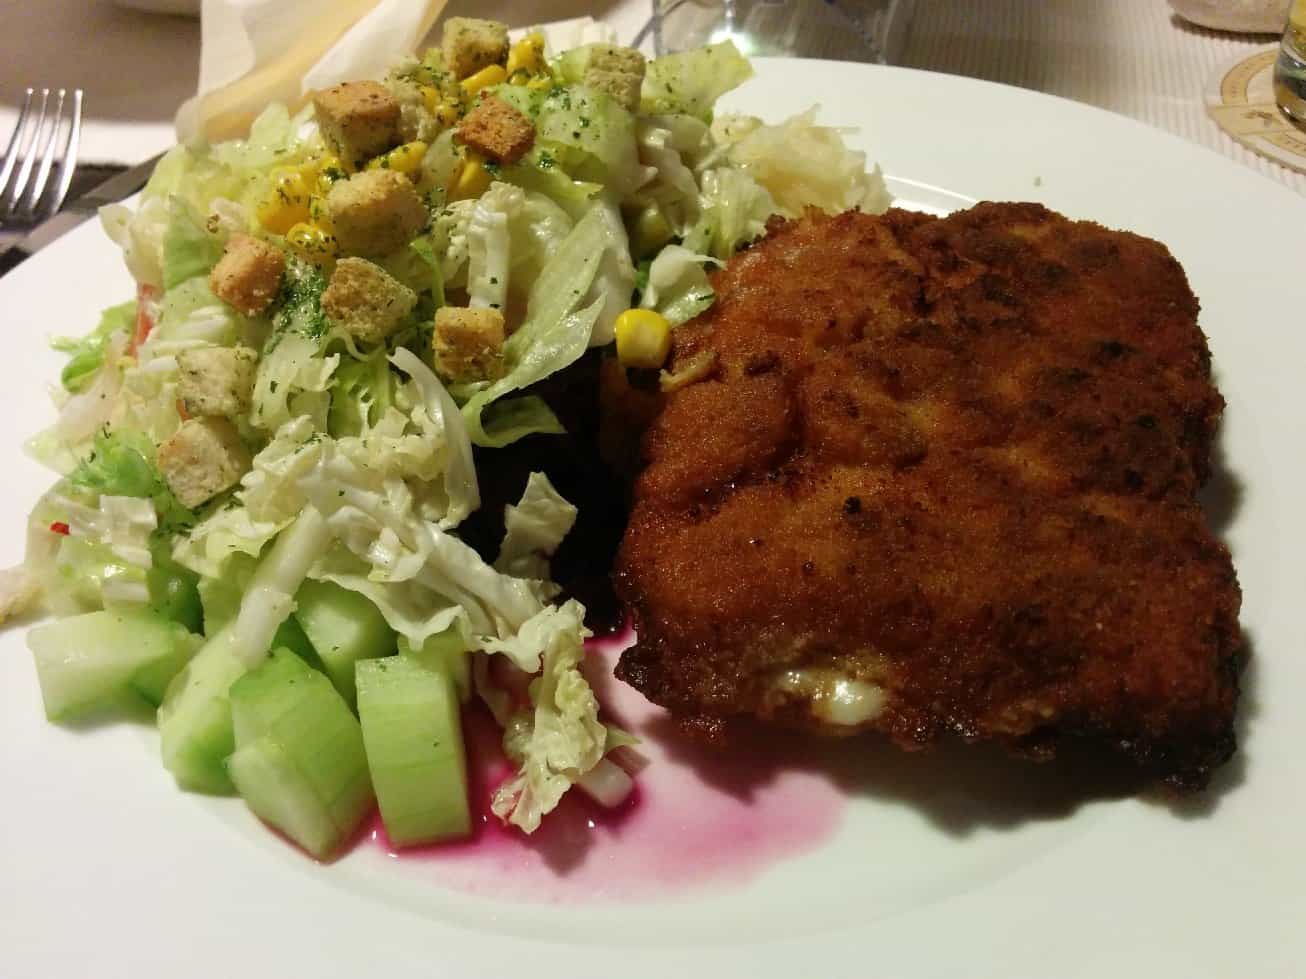 Cordon Bleu mit erstaunlich leckeren Salat. Sagt ein Fleischesser! - Im Restaurant "Zur alten Schmiede" in Bad Cannstatt